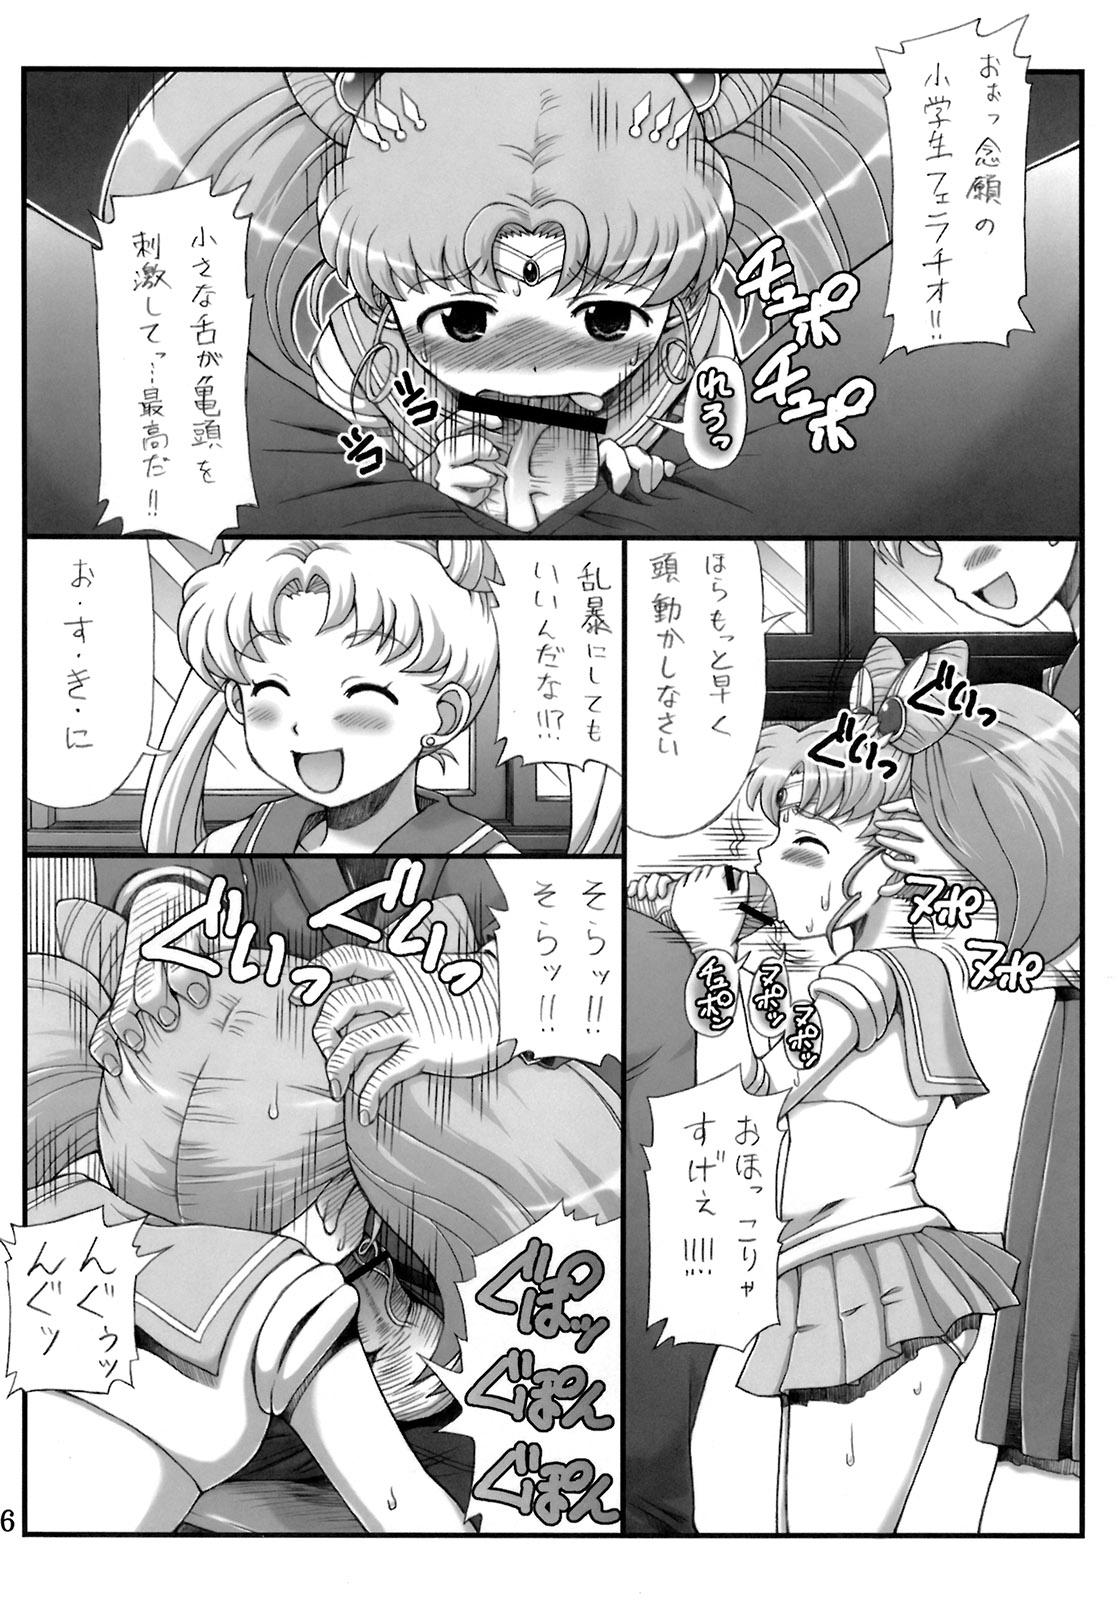 Sister Lovely Battle Suit HALF & HALF - Sailor moon Sakura taisen Tats - Page 5